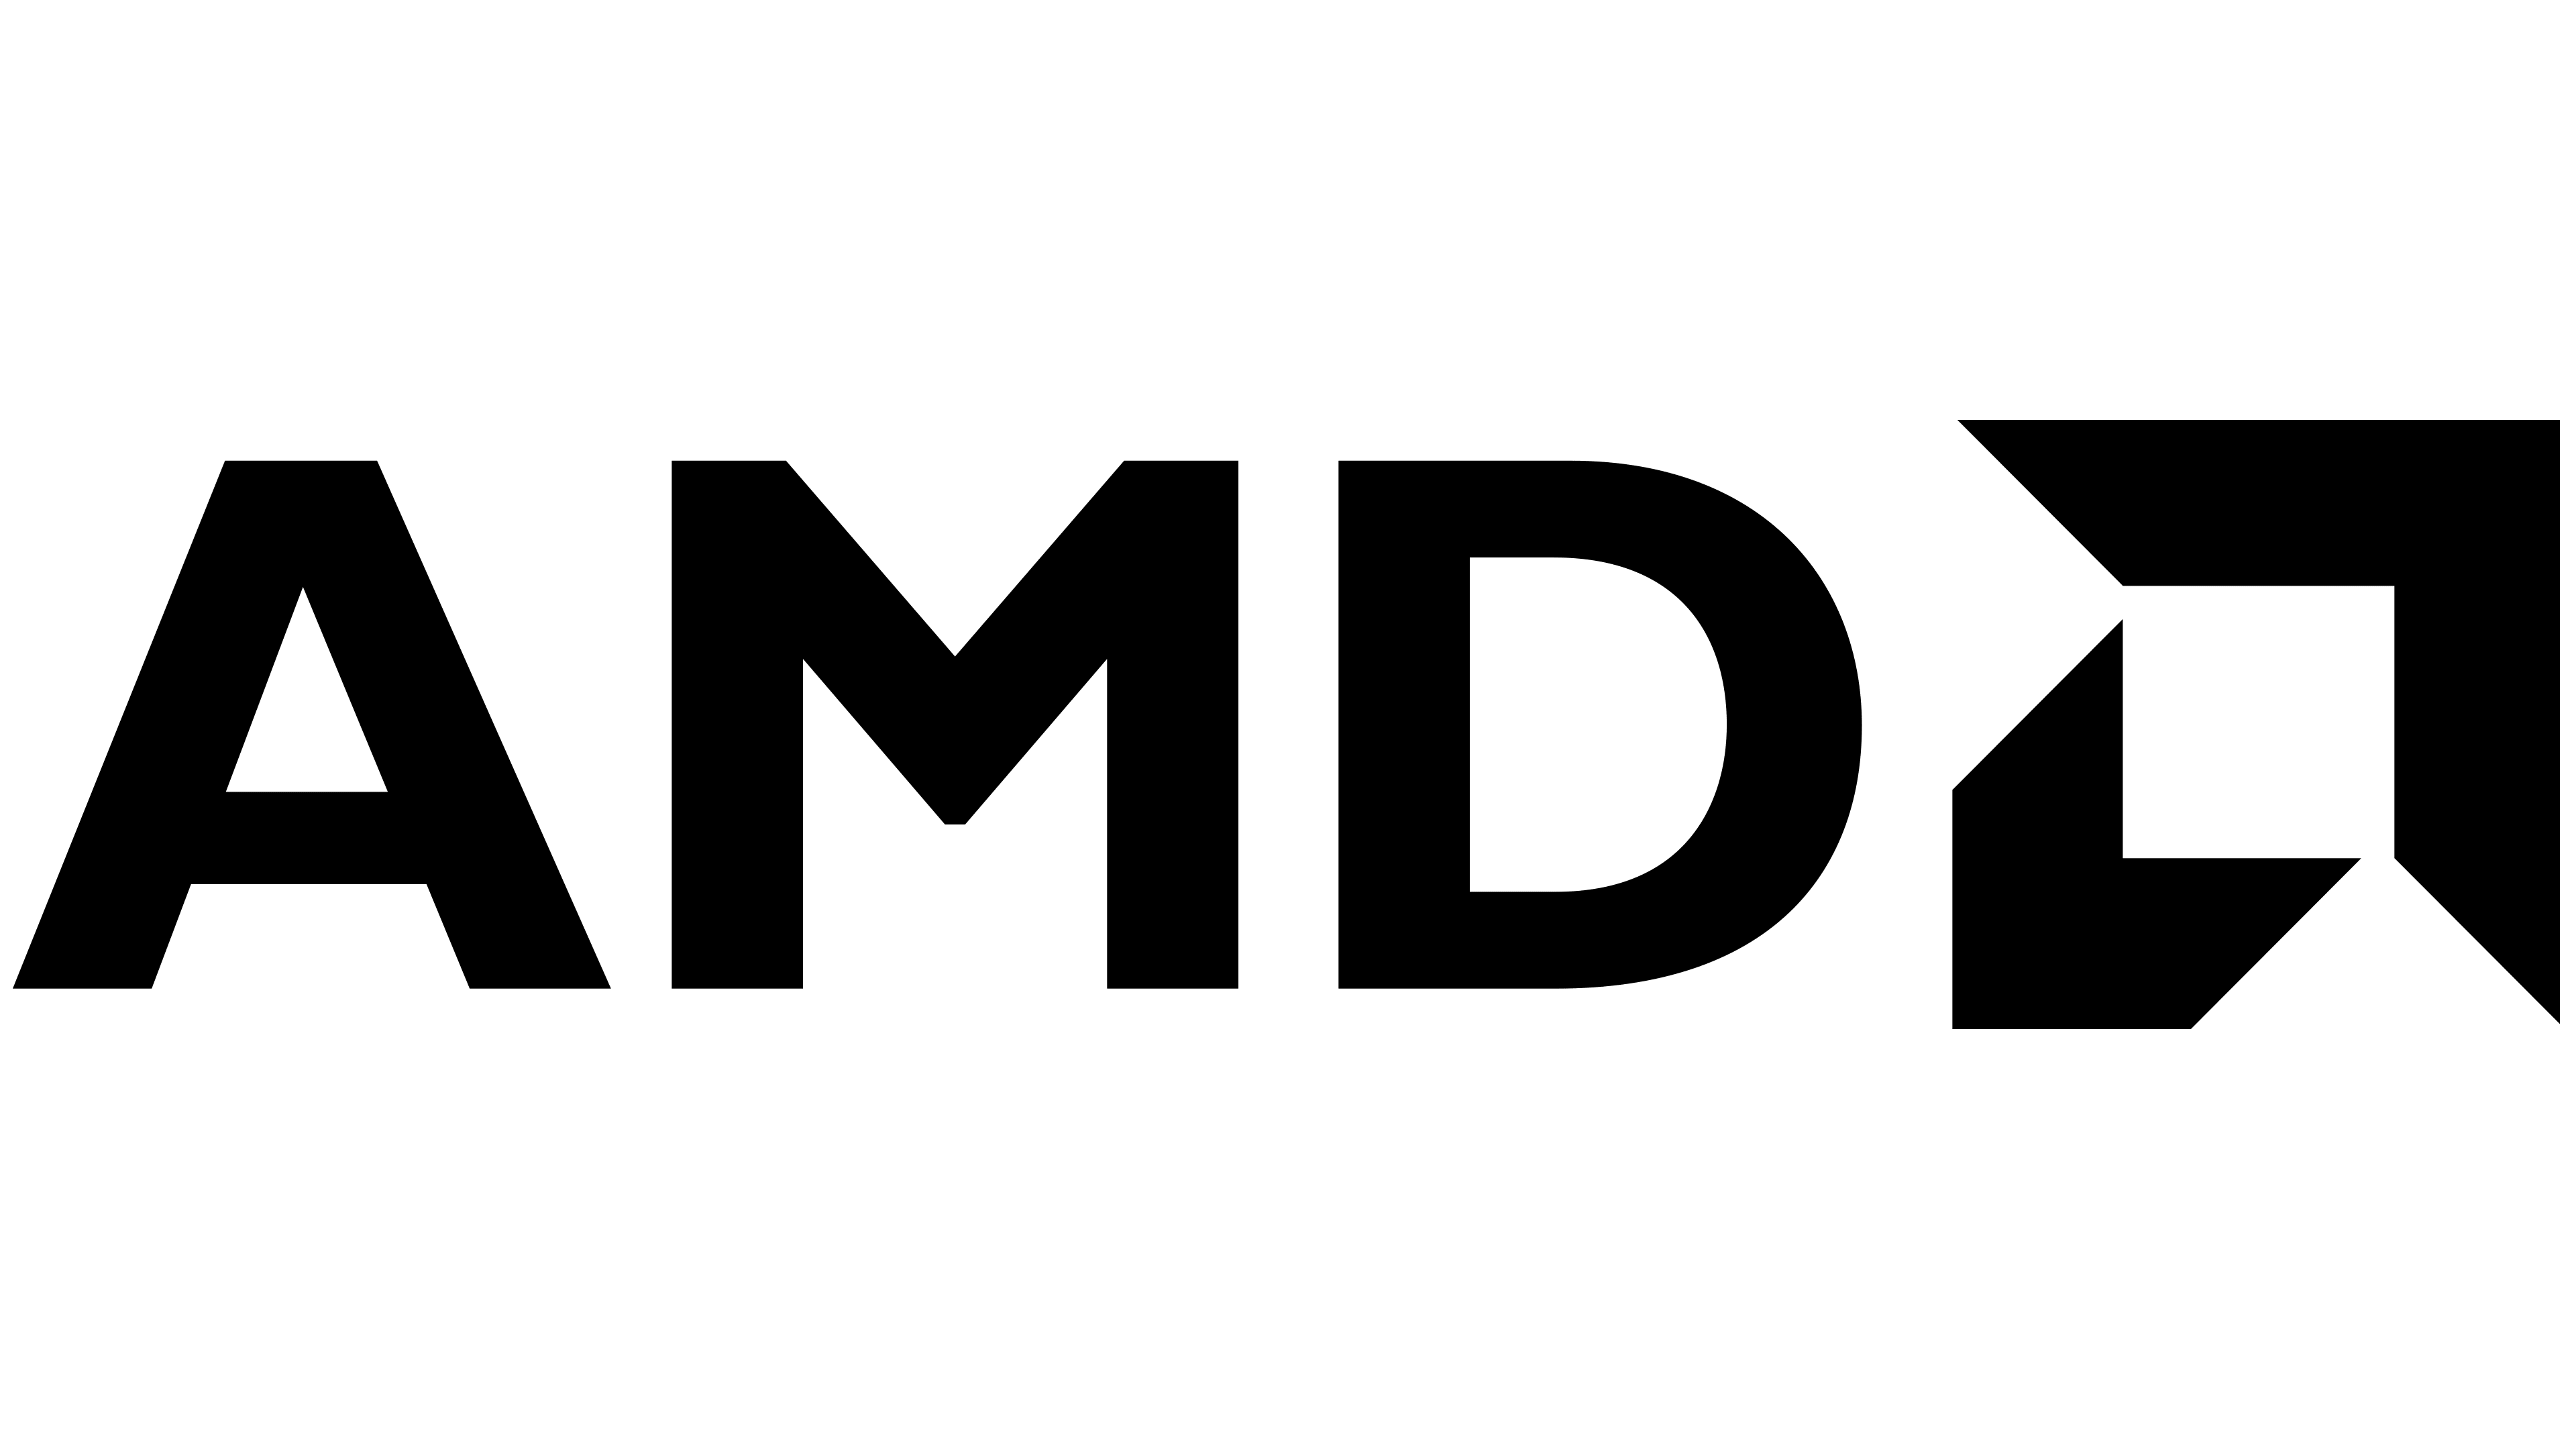 AMD assure le leadership sur les performances et l’efficacité énergétique dans le Supercomputing